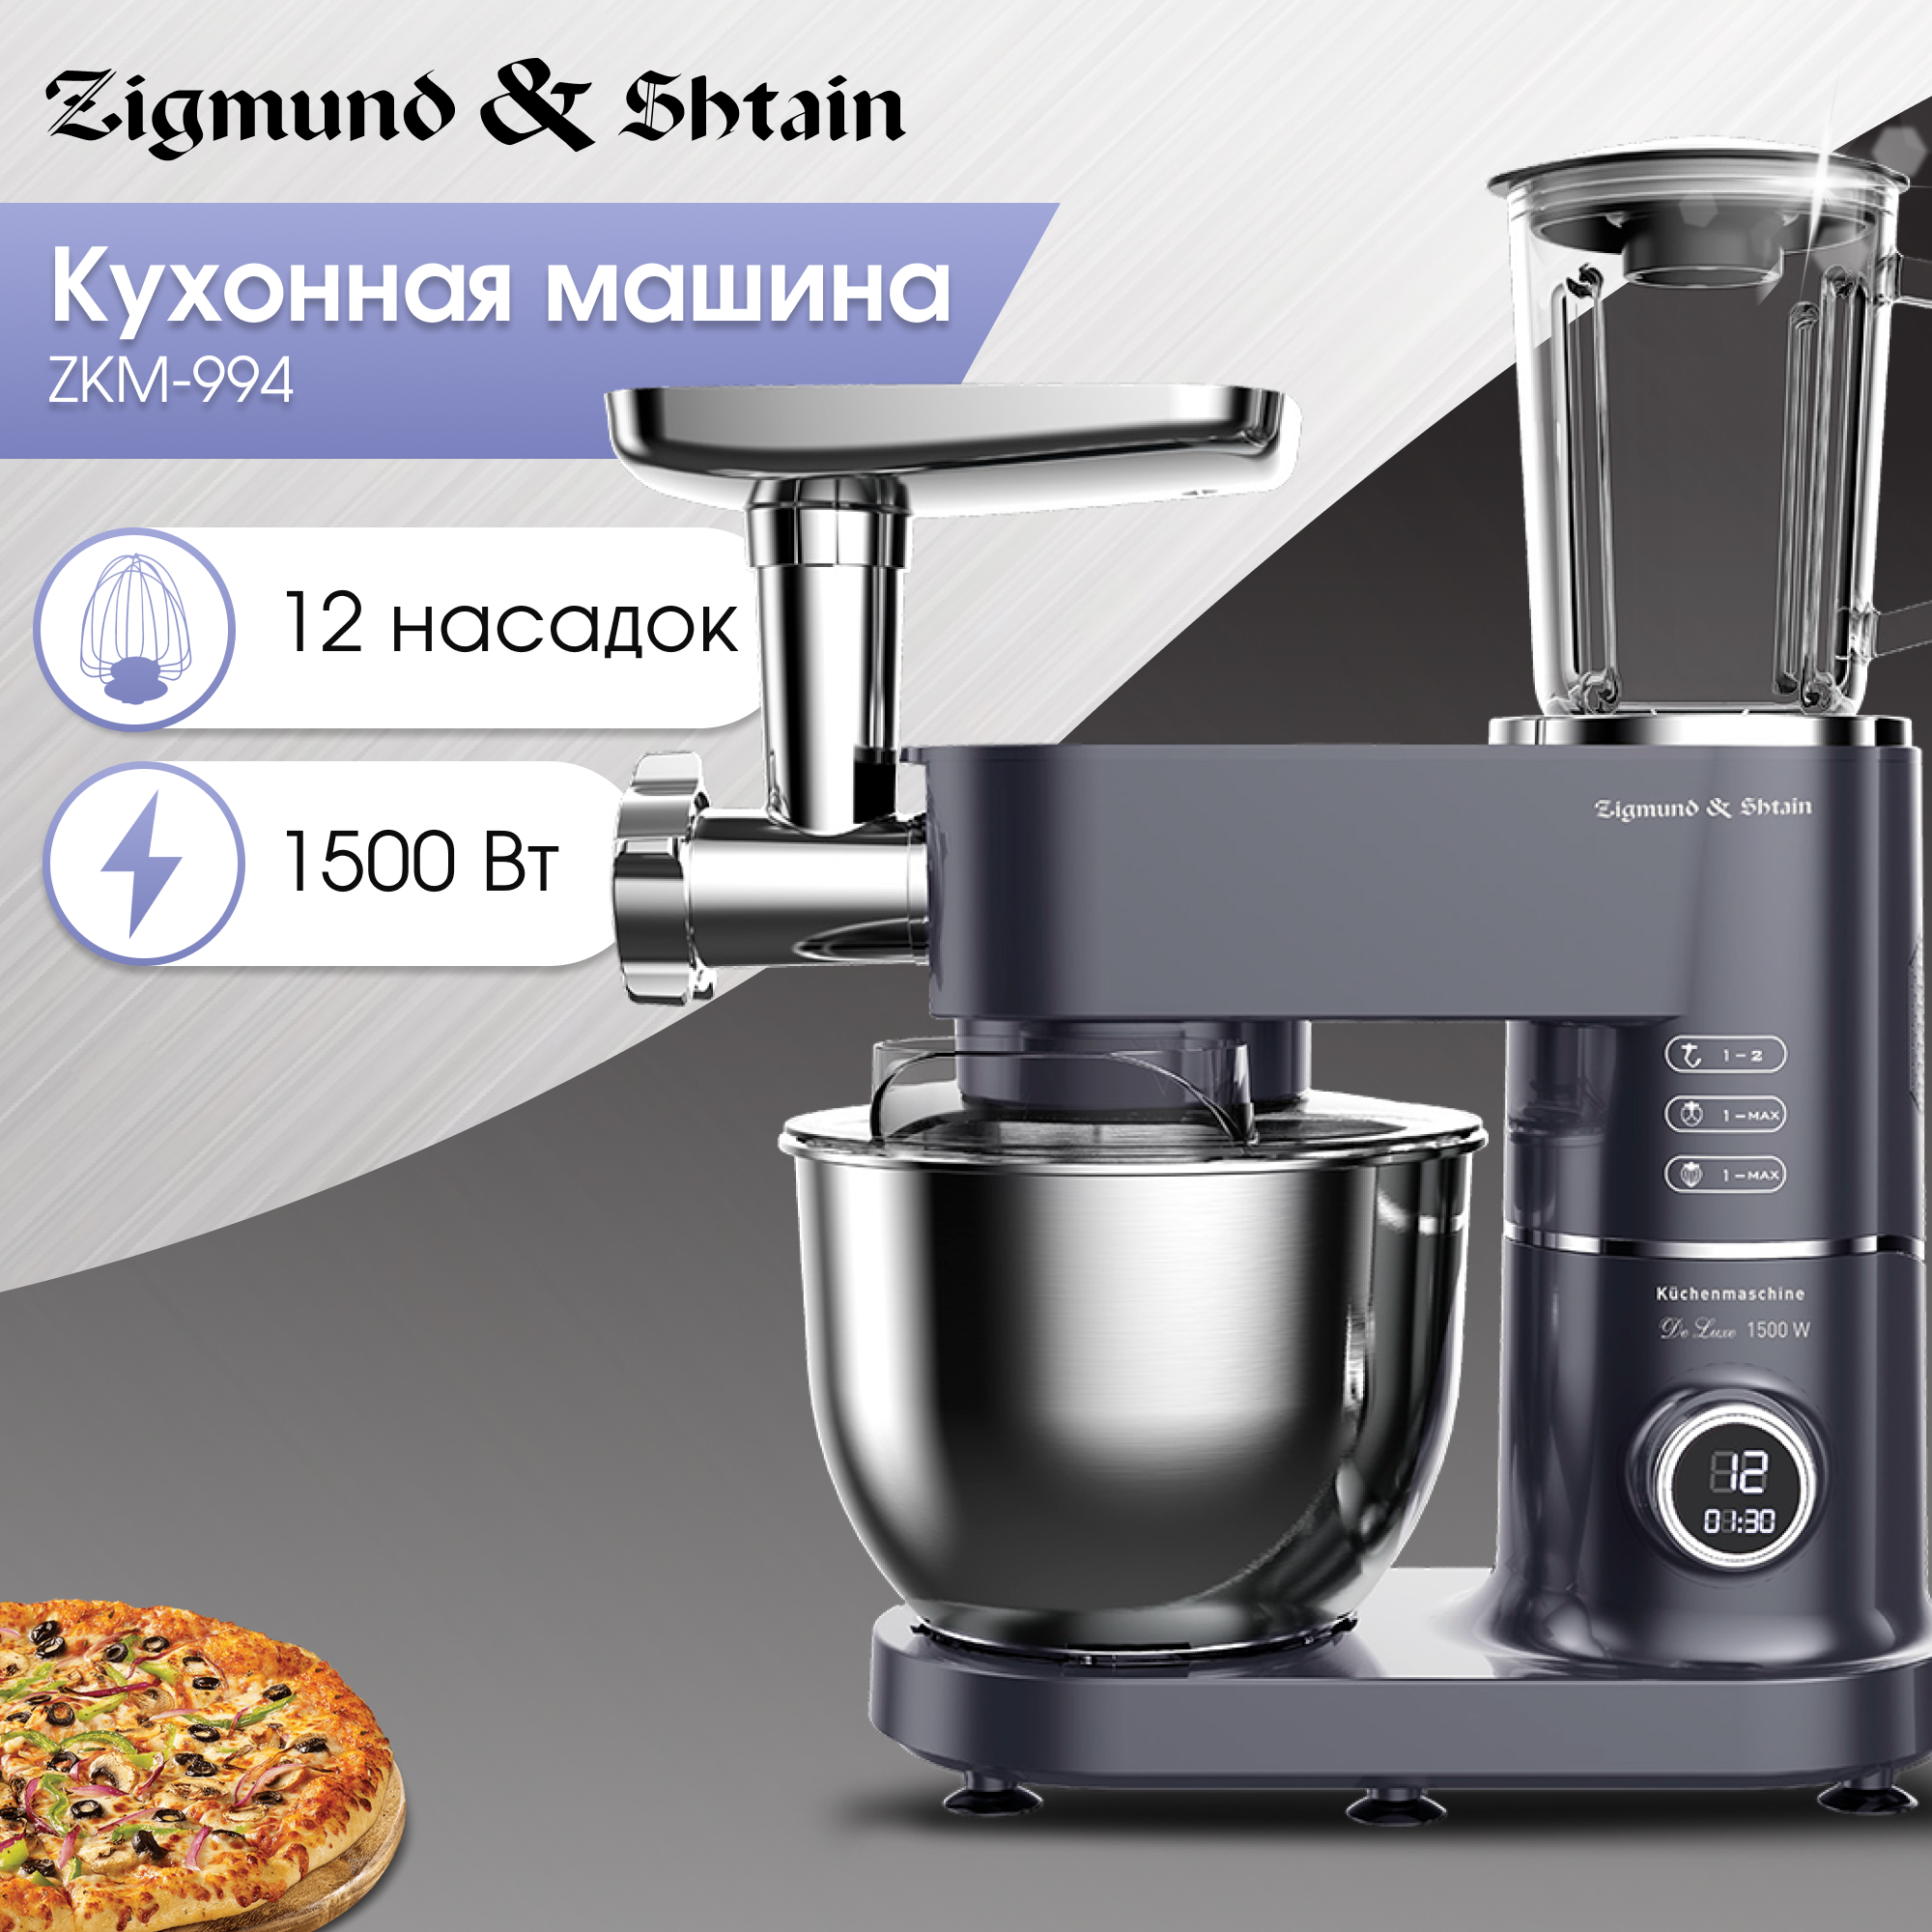 Кухонный комбайн Zigmund & Shtain ZKM-994 серый, черный